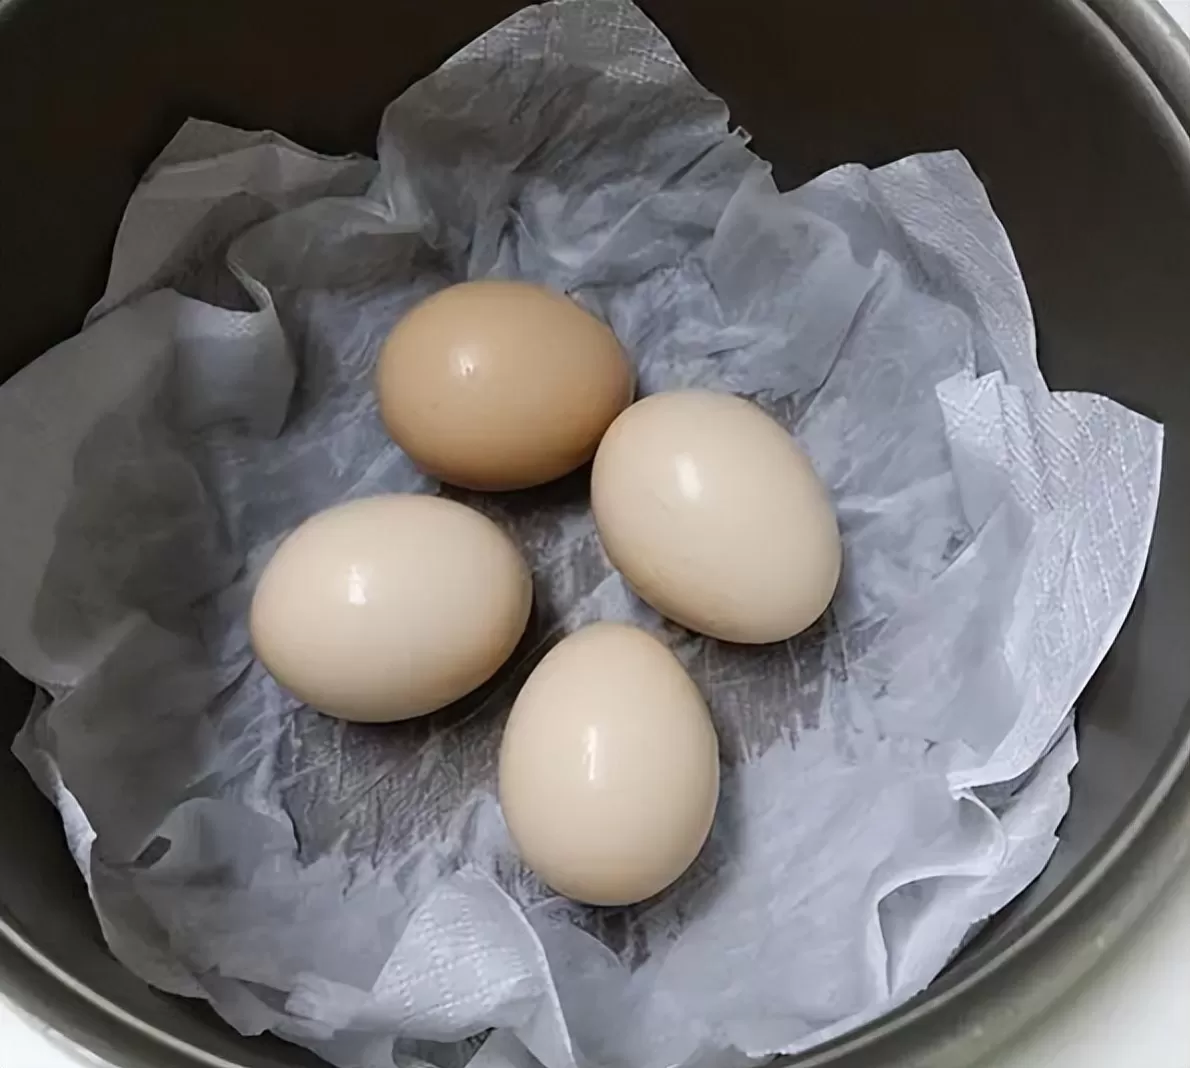 Luộc trứng chỉ cần xíu nước, làm thêm điều này trứng vẫn thơm ngon hấp dẫn như thường - 4